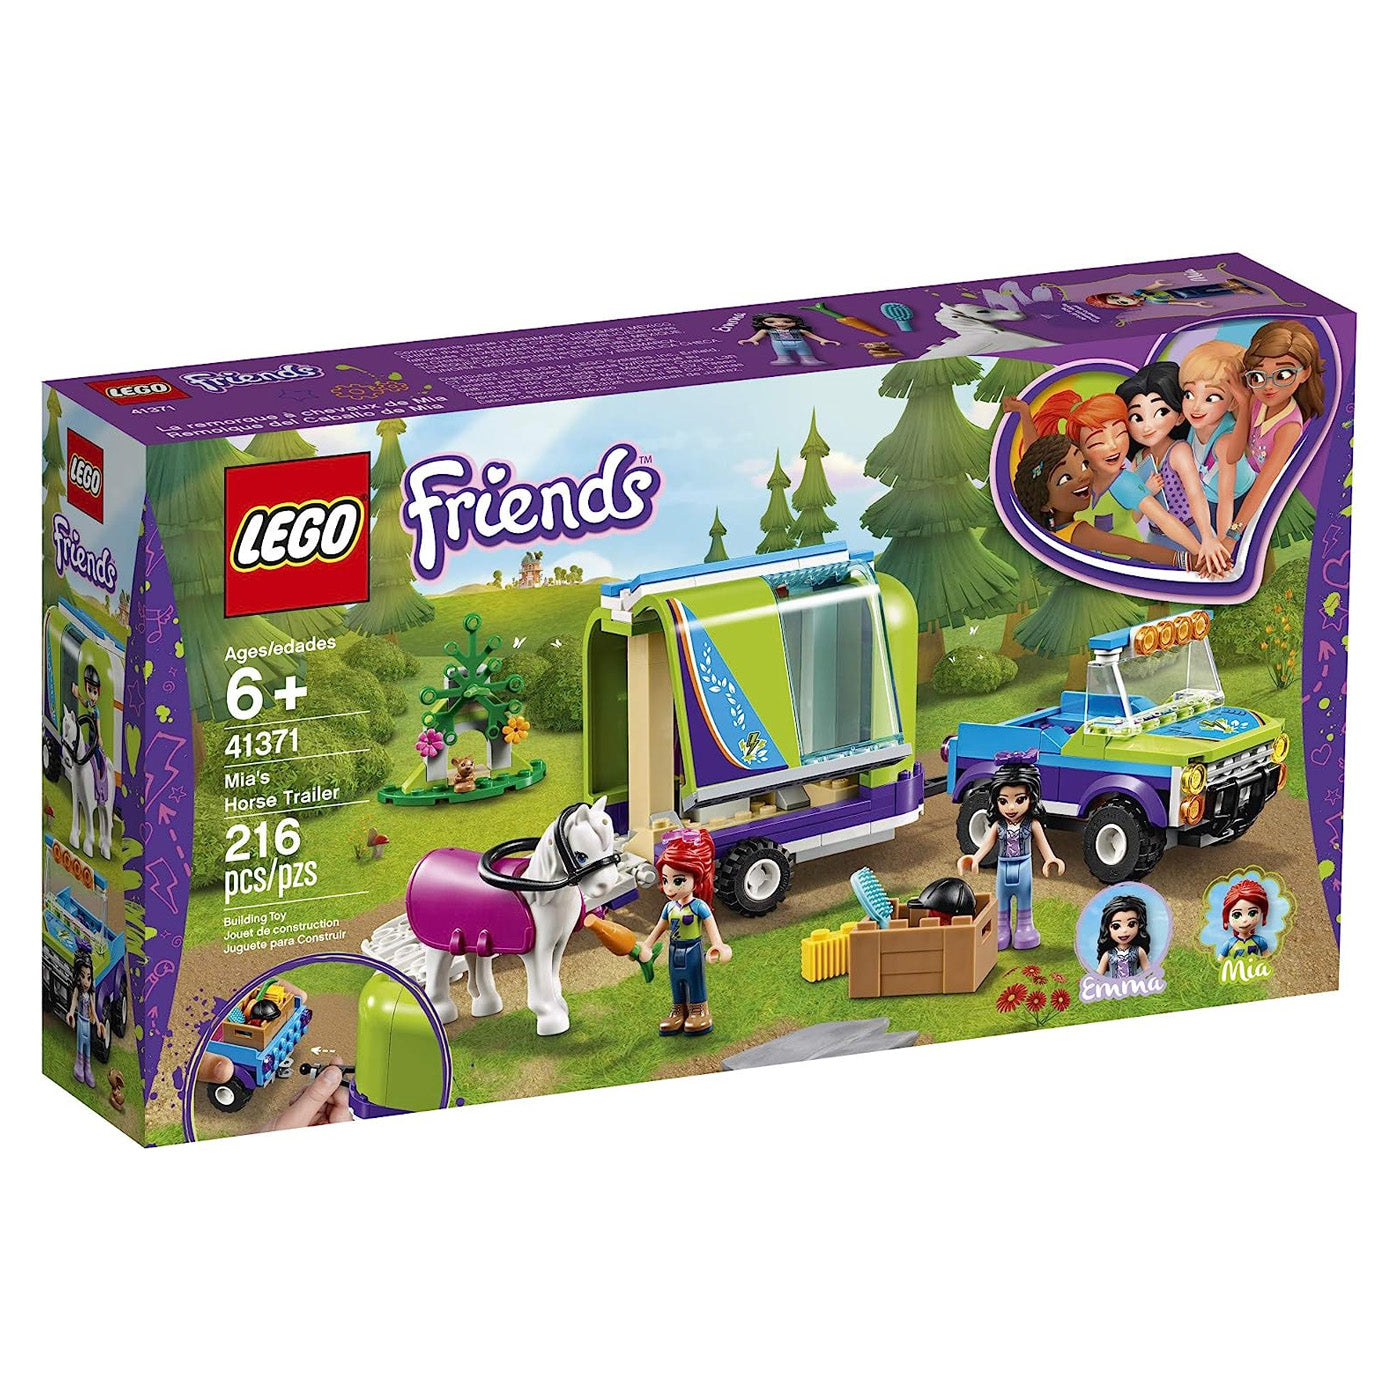 LEGO Friends: Mia's Horse Trailer Set 41371